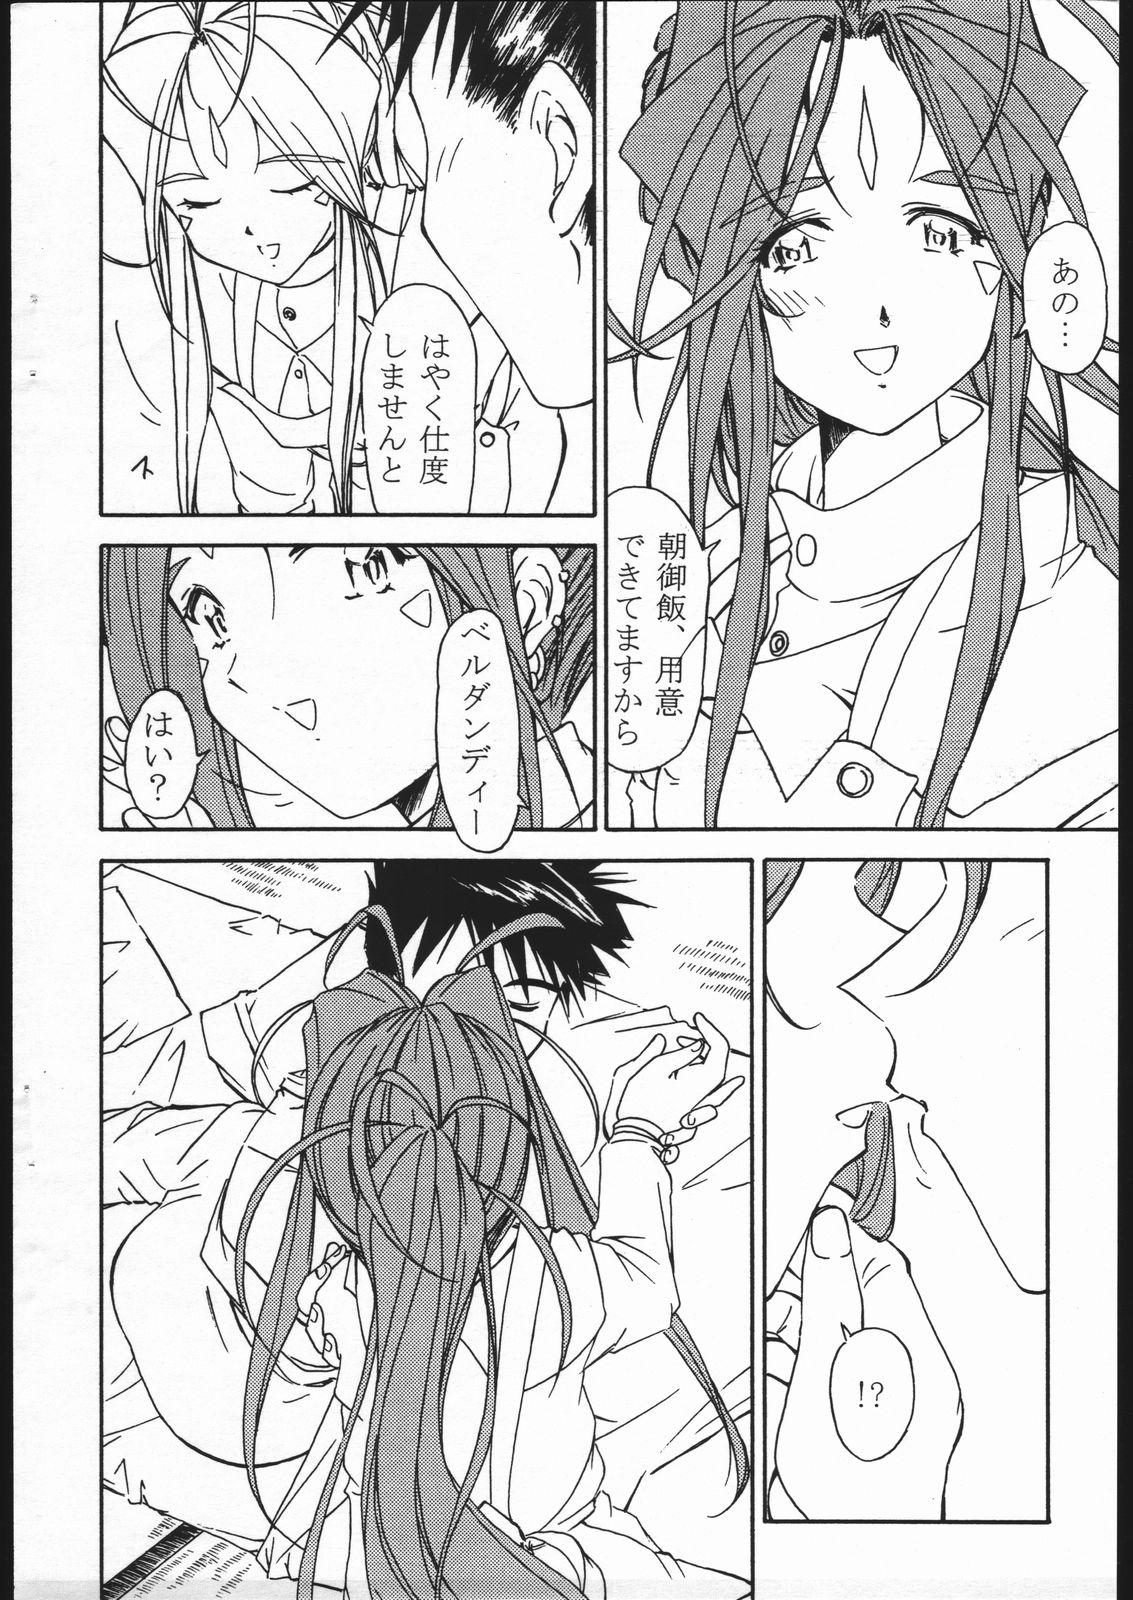 Fetish Ohayou Gozaimasu! Megami-sama! - Ah my goddess Rabuda - Page 3